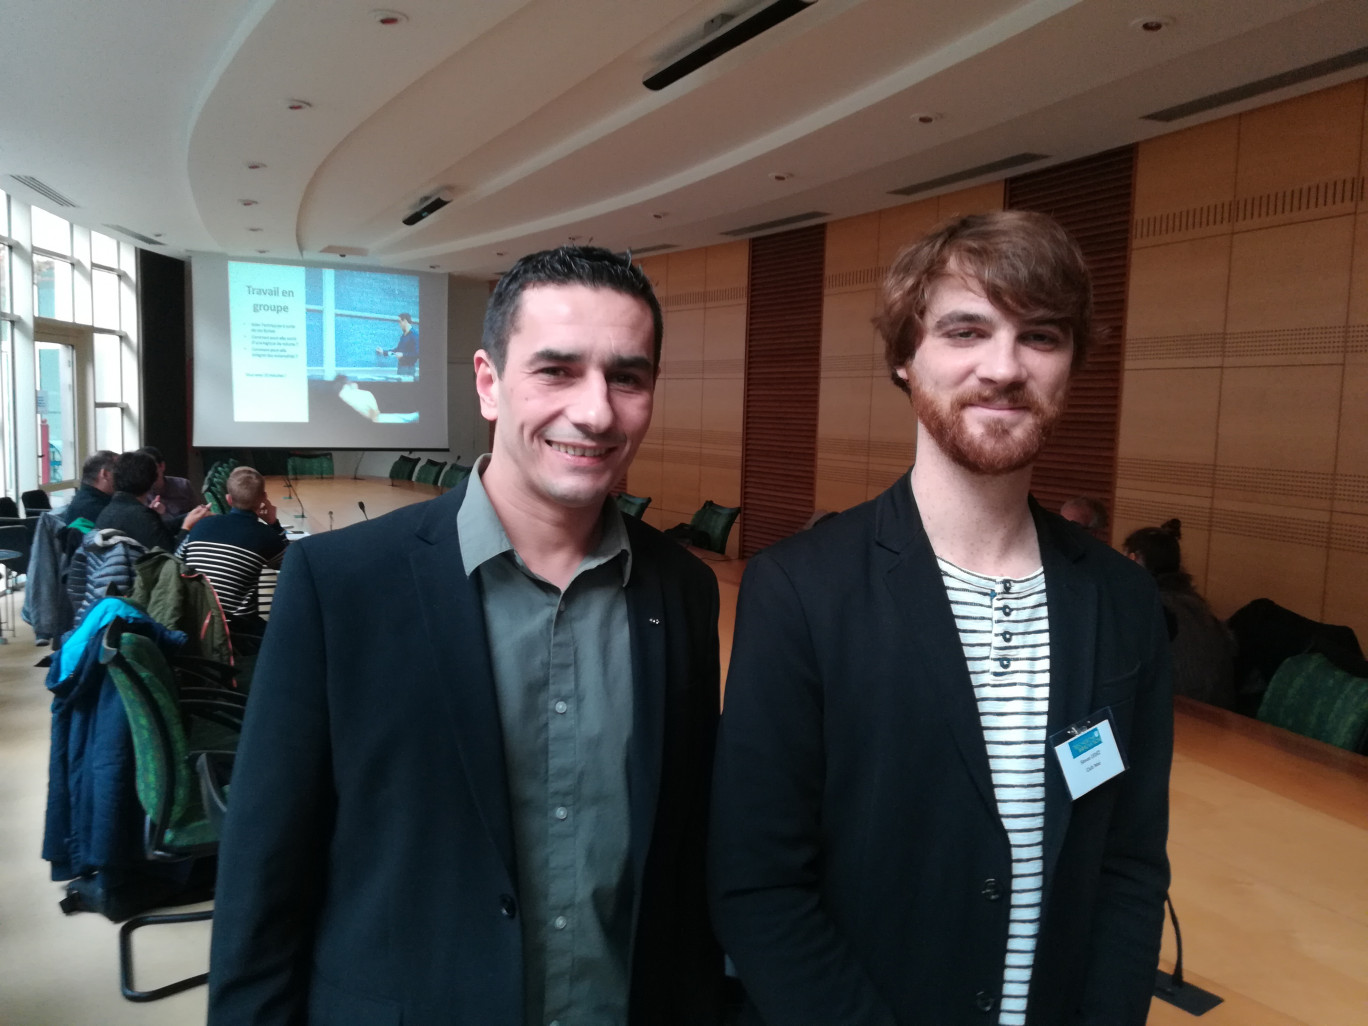 Simon Ledez (à droite) et Julien Da Costa (à gauche) étaient présents à la rencontre pour partager leur expérience.